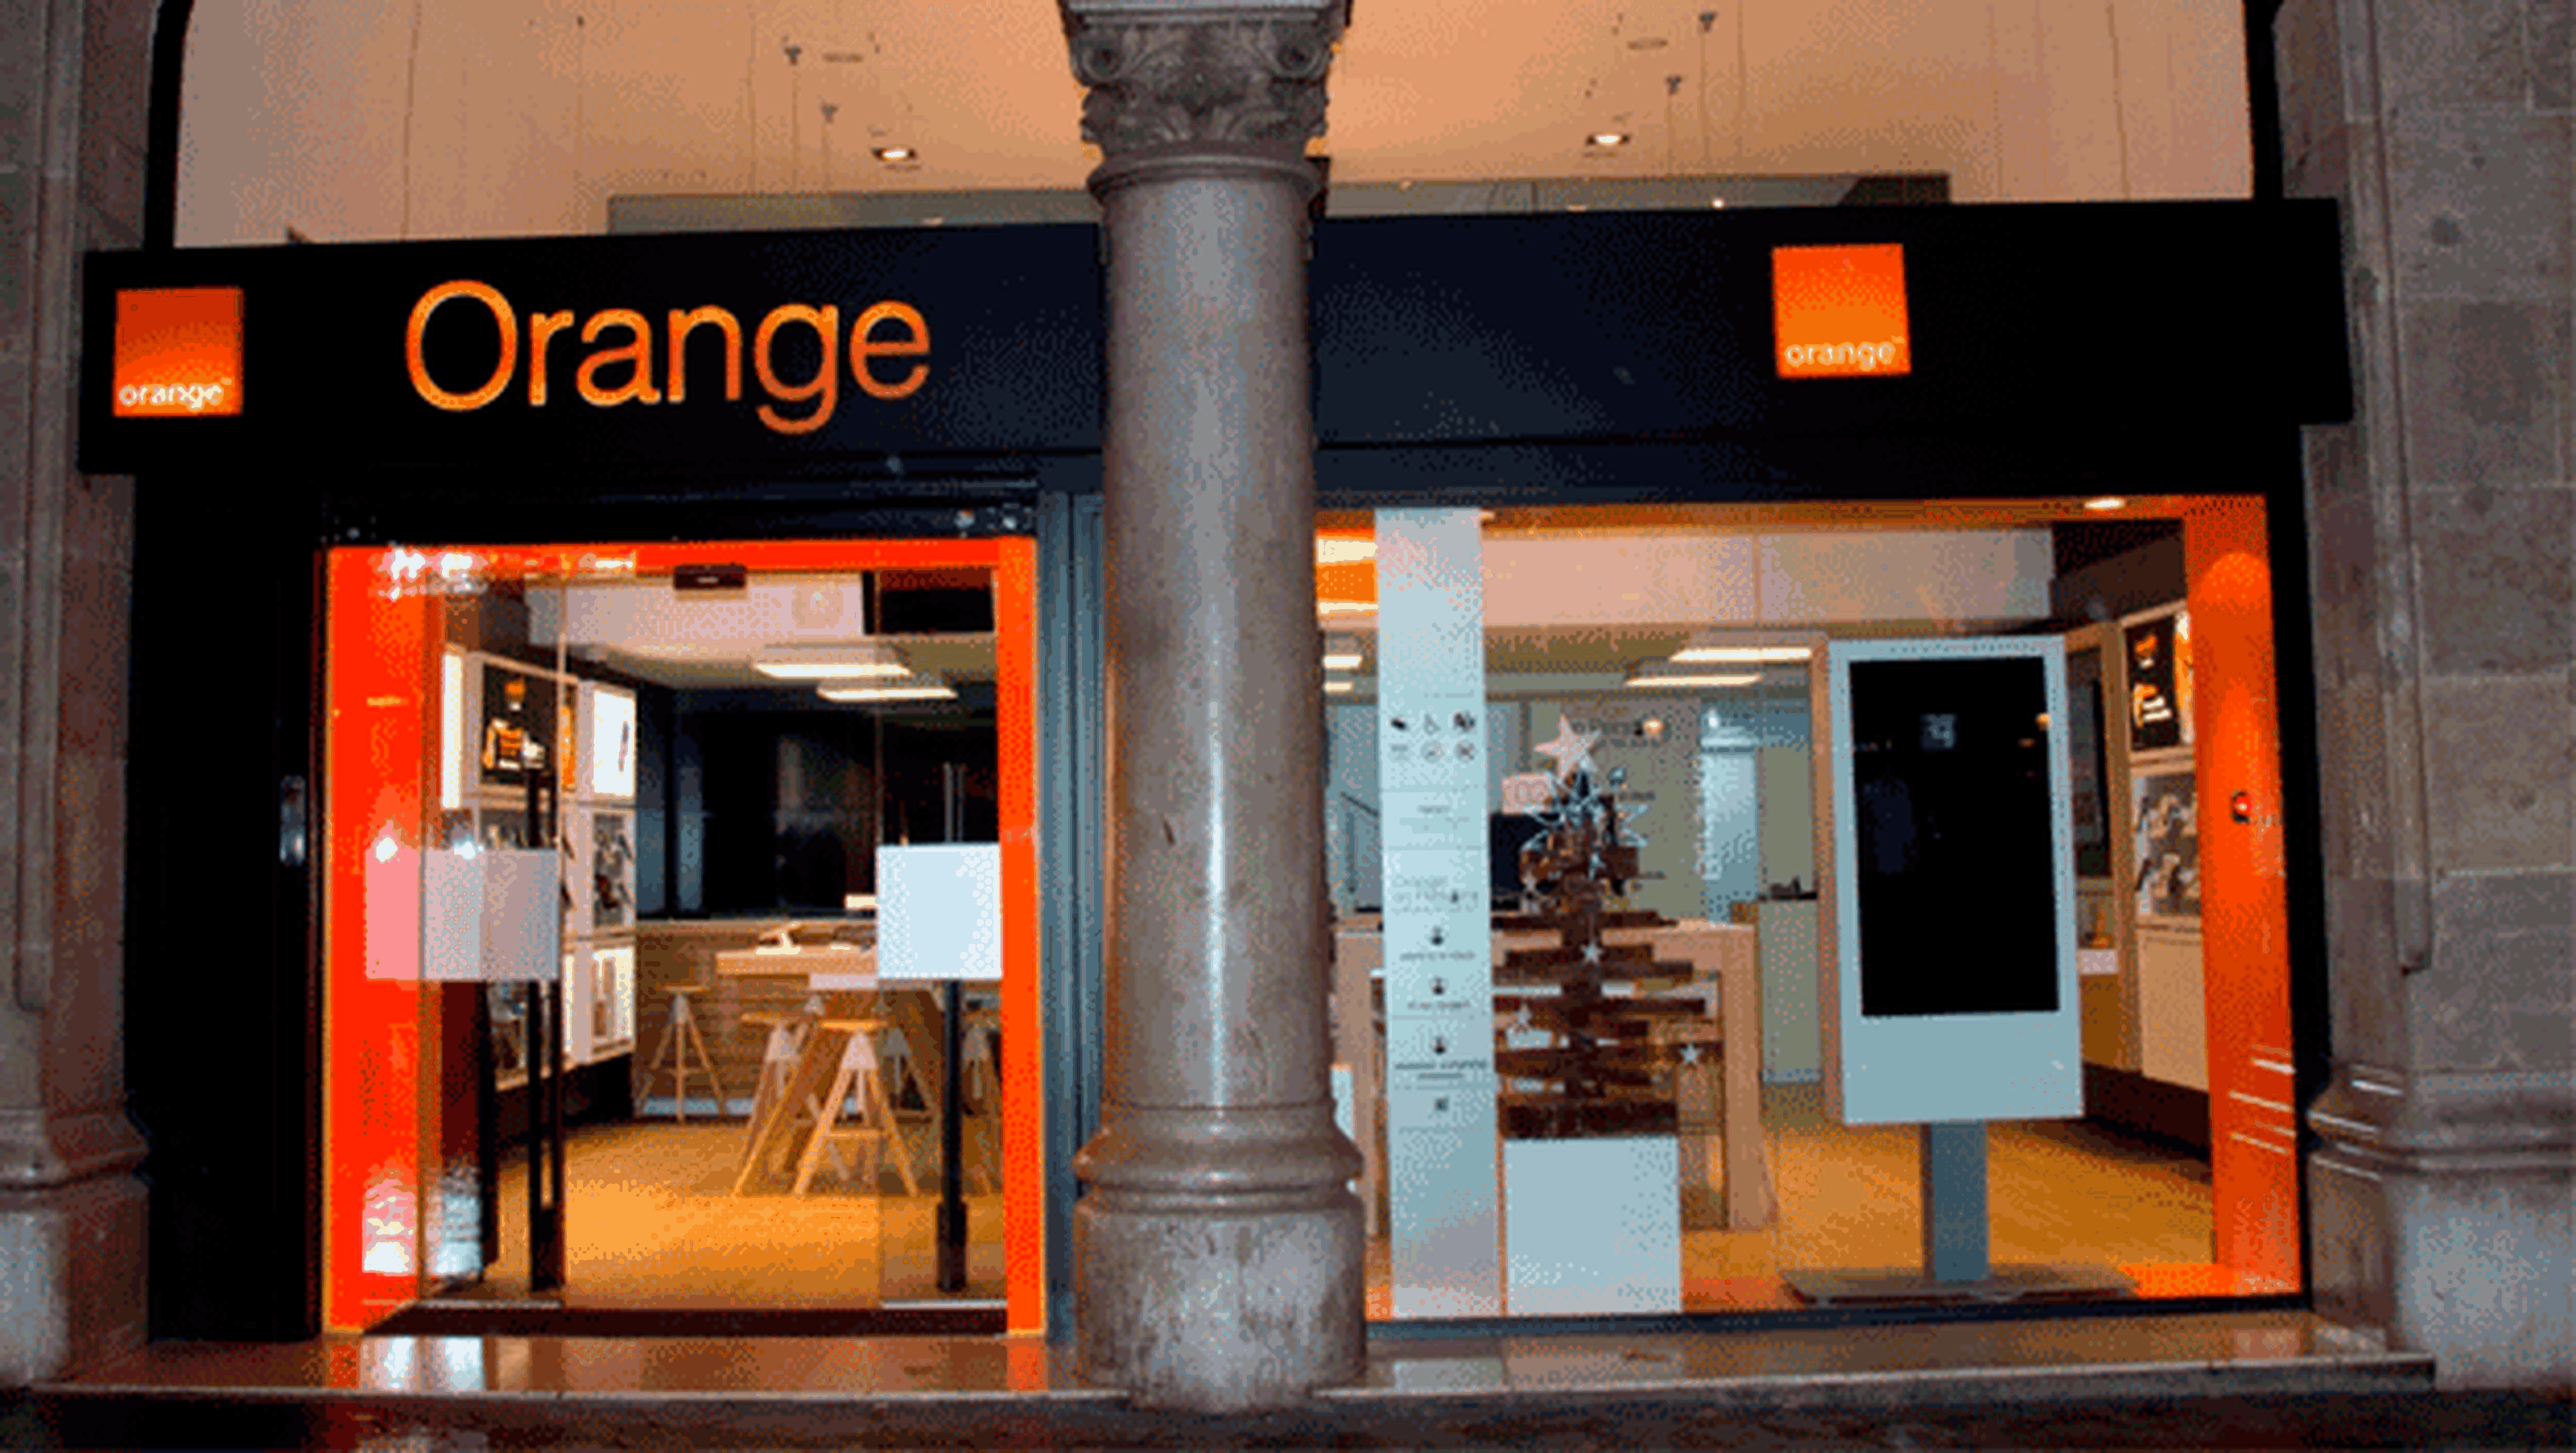 Orange renueva sus tarifas de prepago: 6 GB 15 euros | Computer Hoy